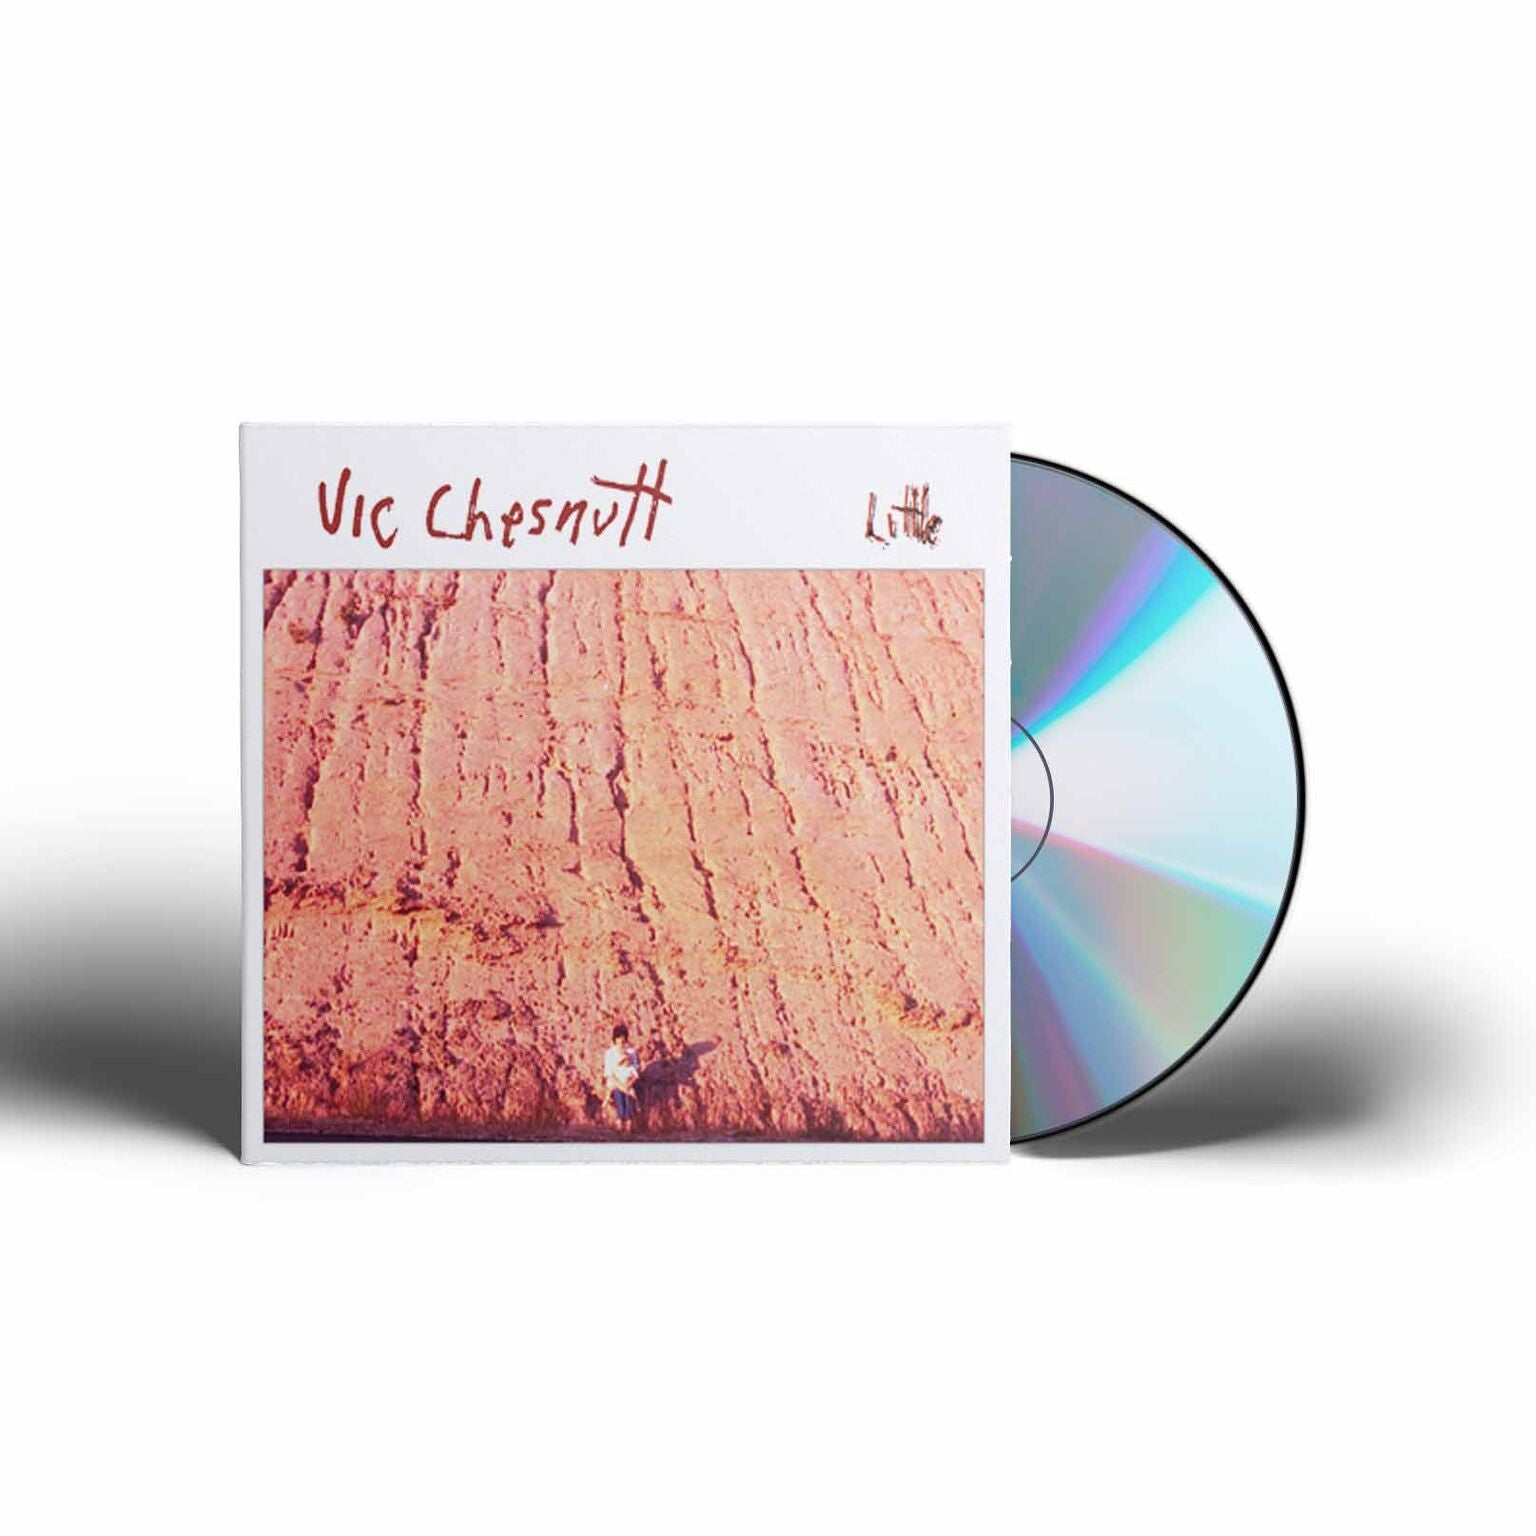 Vic Chesnutt - Little [CD]